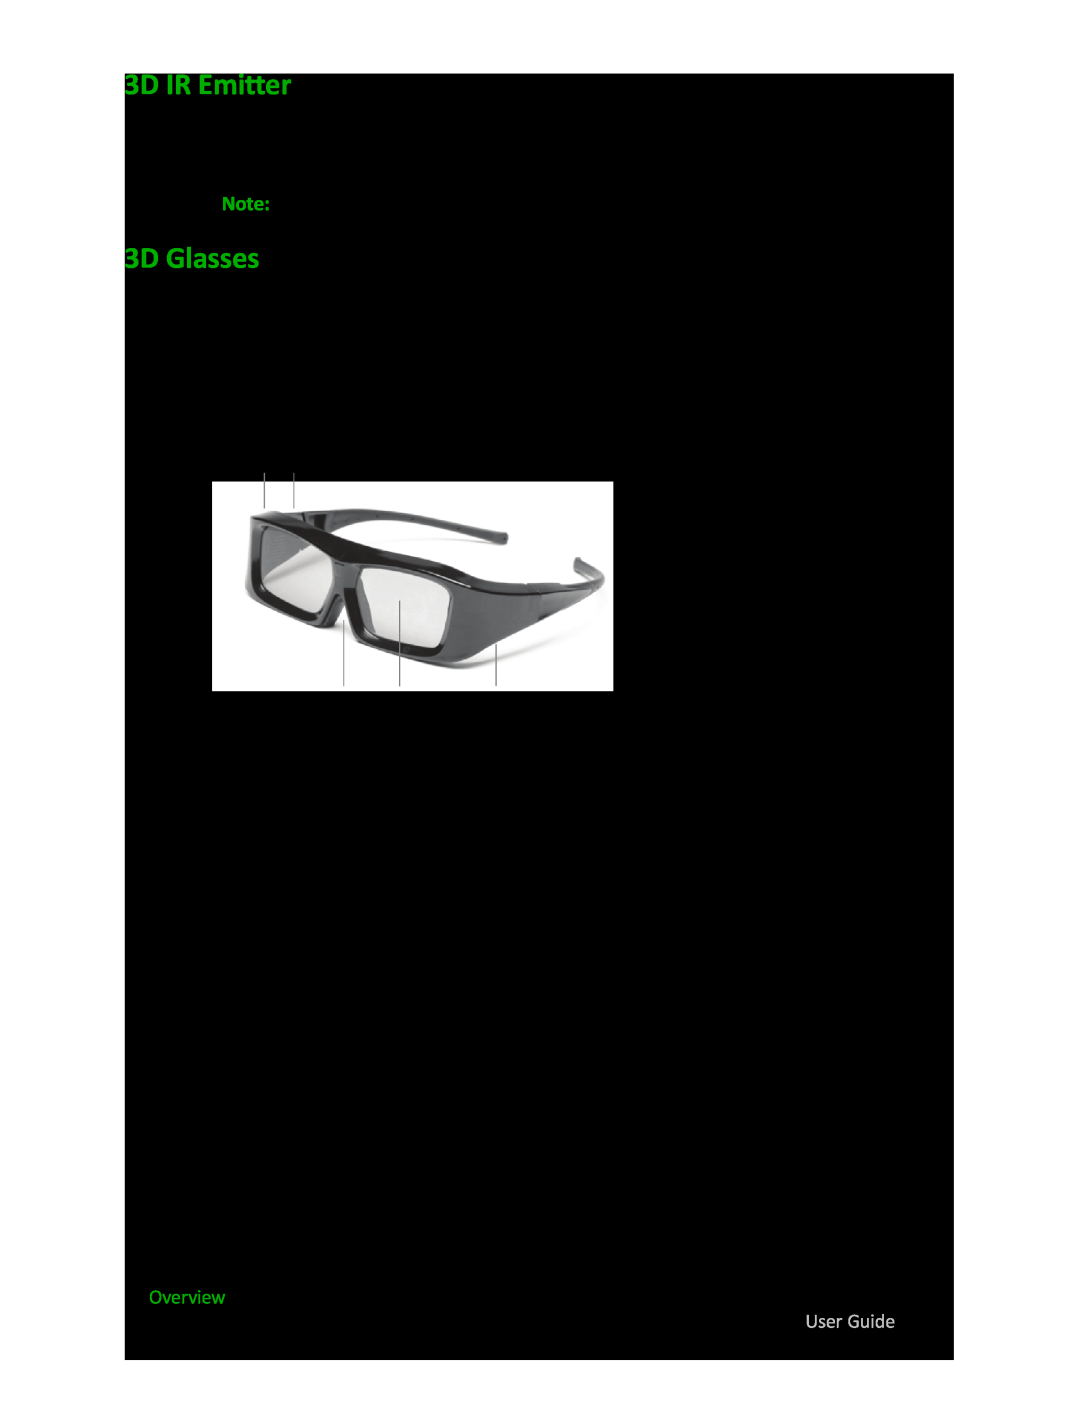 Sim2 Multimedia 3D-S manual 3D IR Emitter, 3D Glasses, ❶ ❷ ❸ ❹ ❺ 